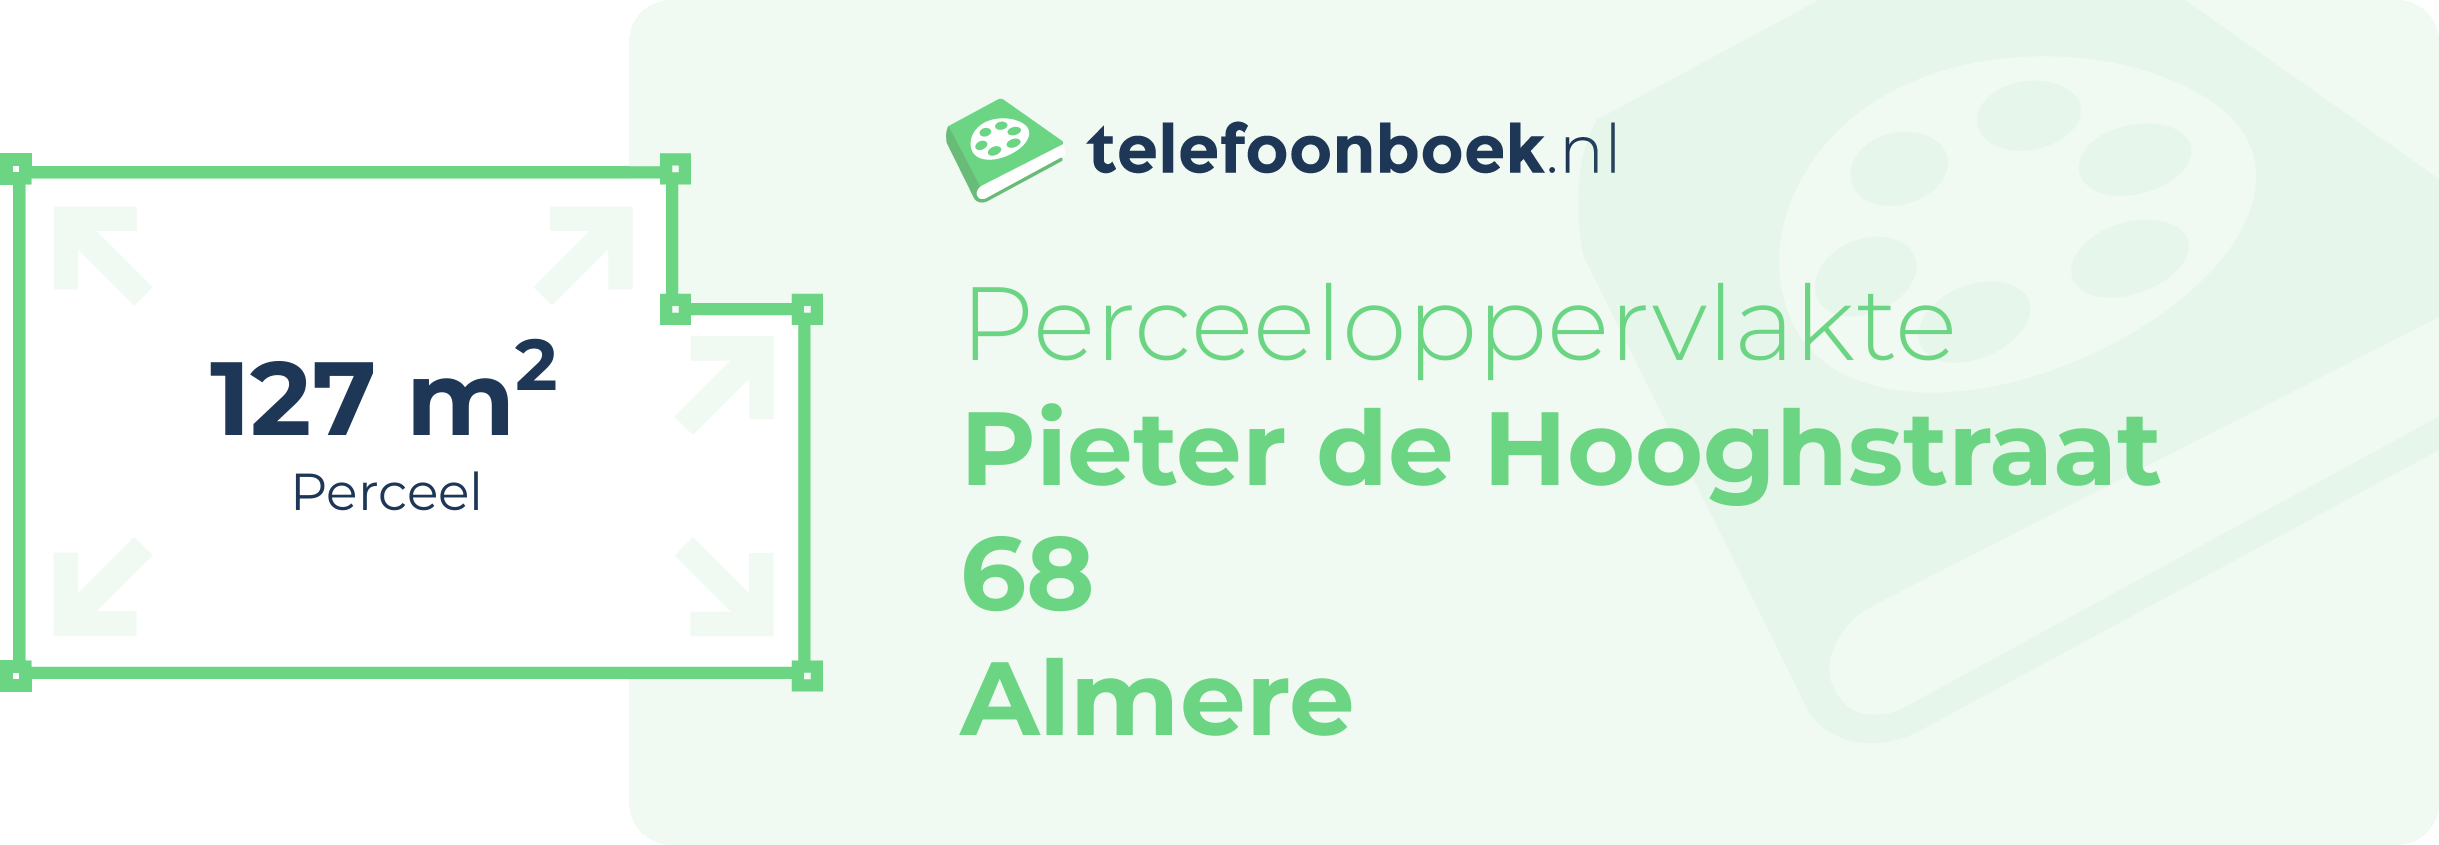 Perceeloppervlakte Pieter De Hooghstraat 68 Almere